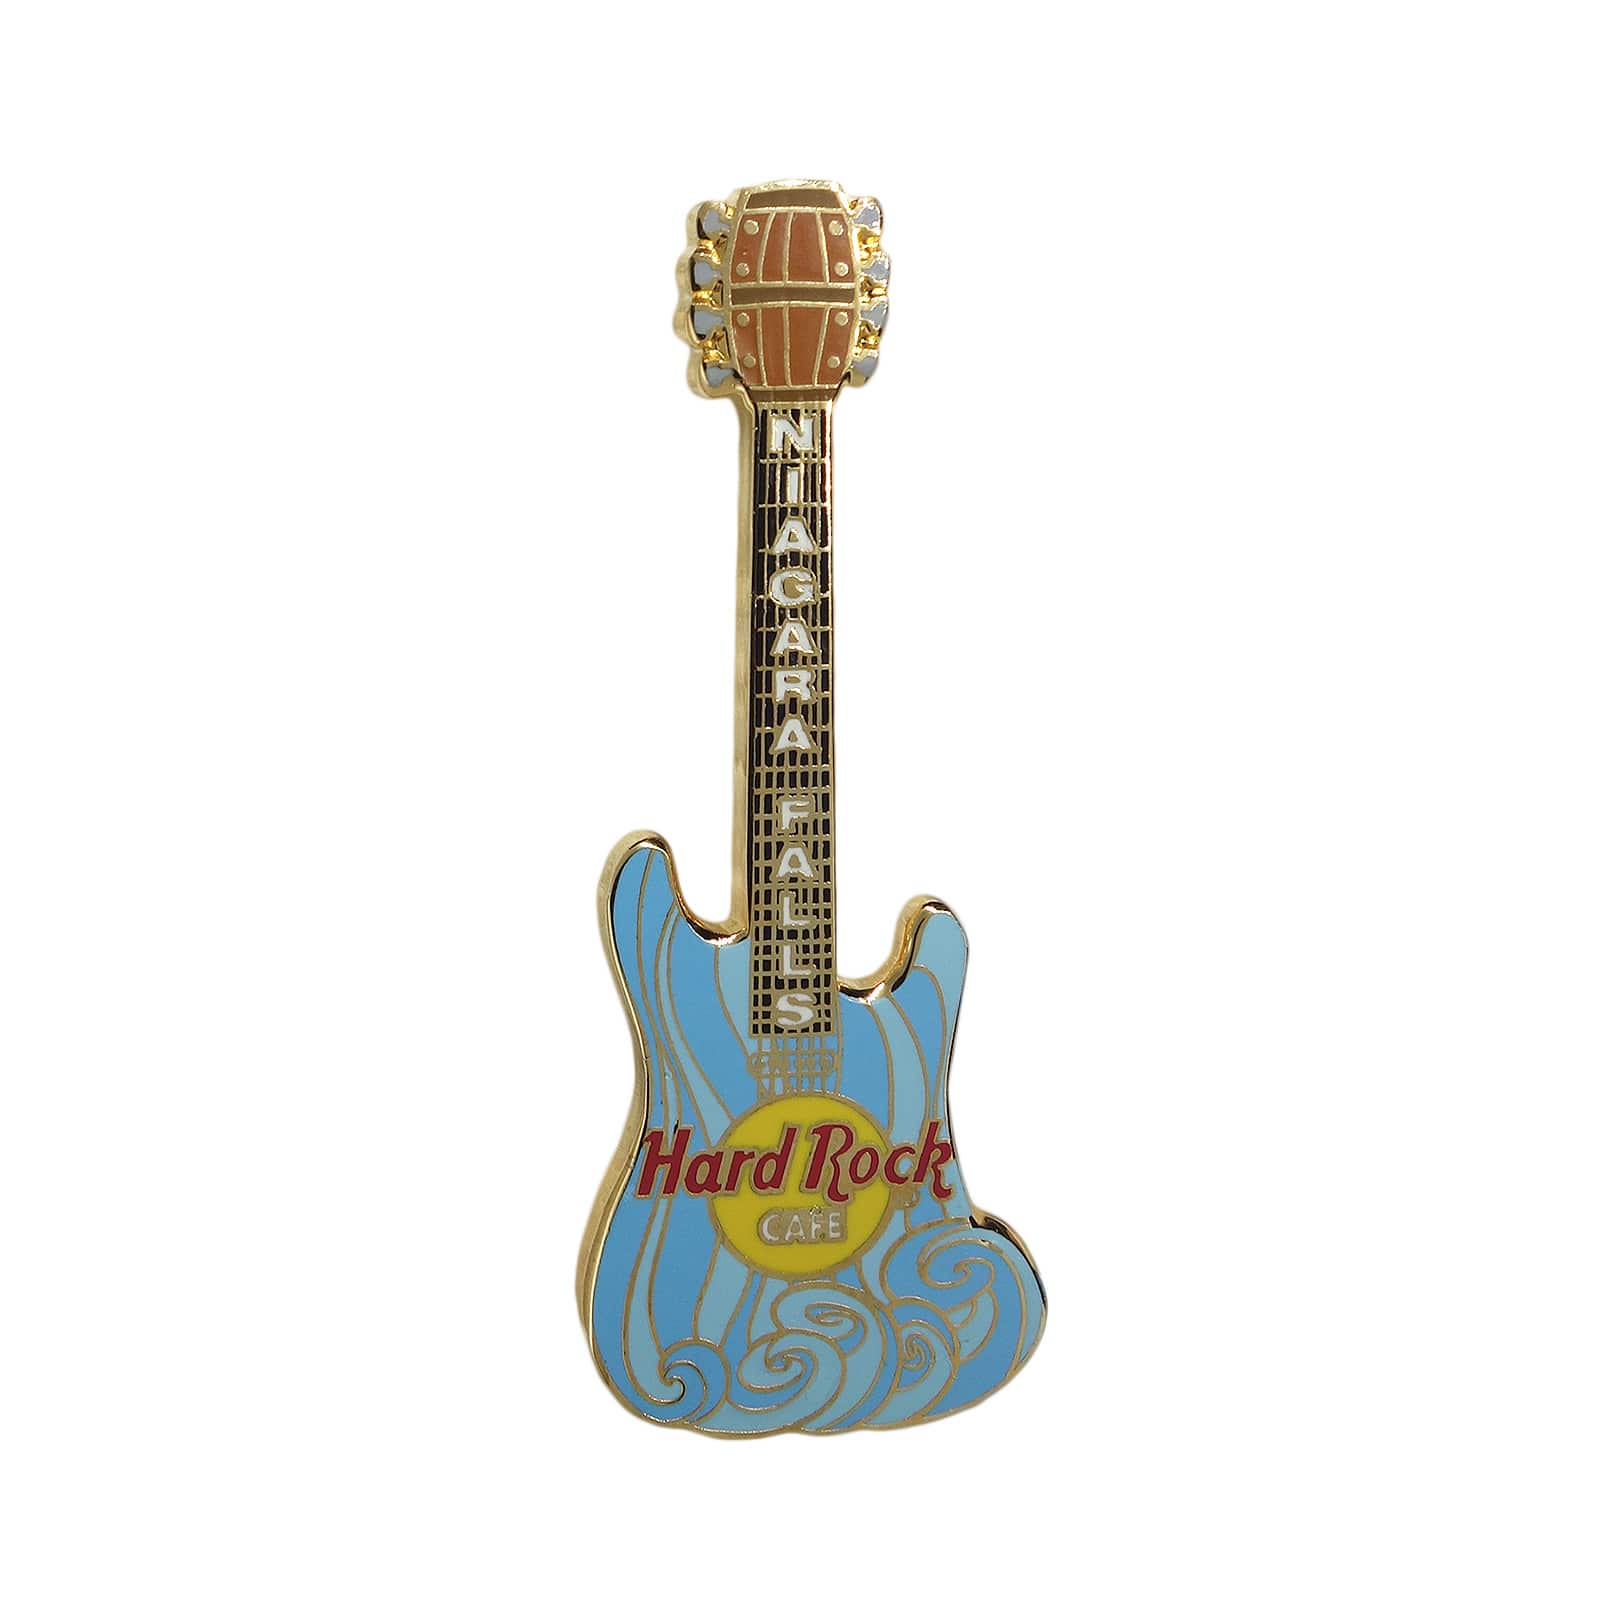 Hard Rock CAFE ギター ピンズ ハードロックカフェ NIAGARA FALLS